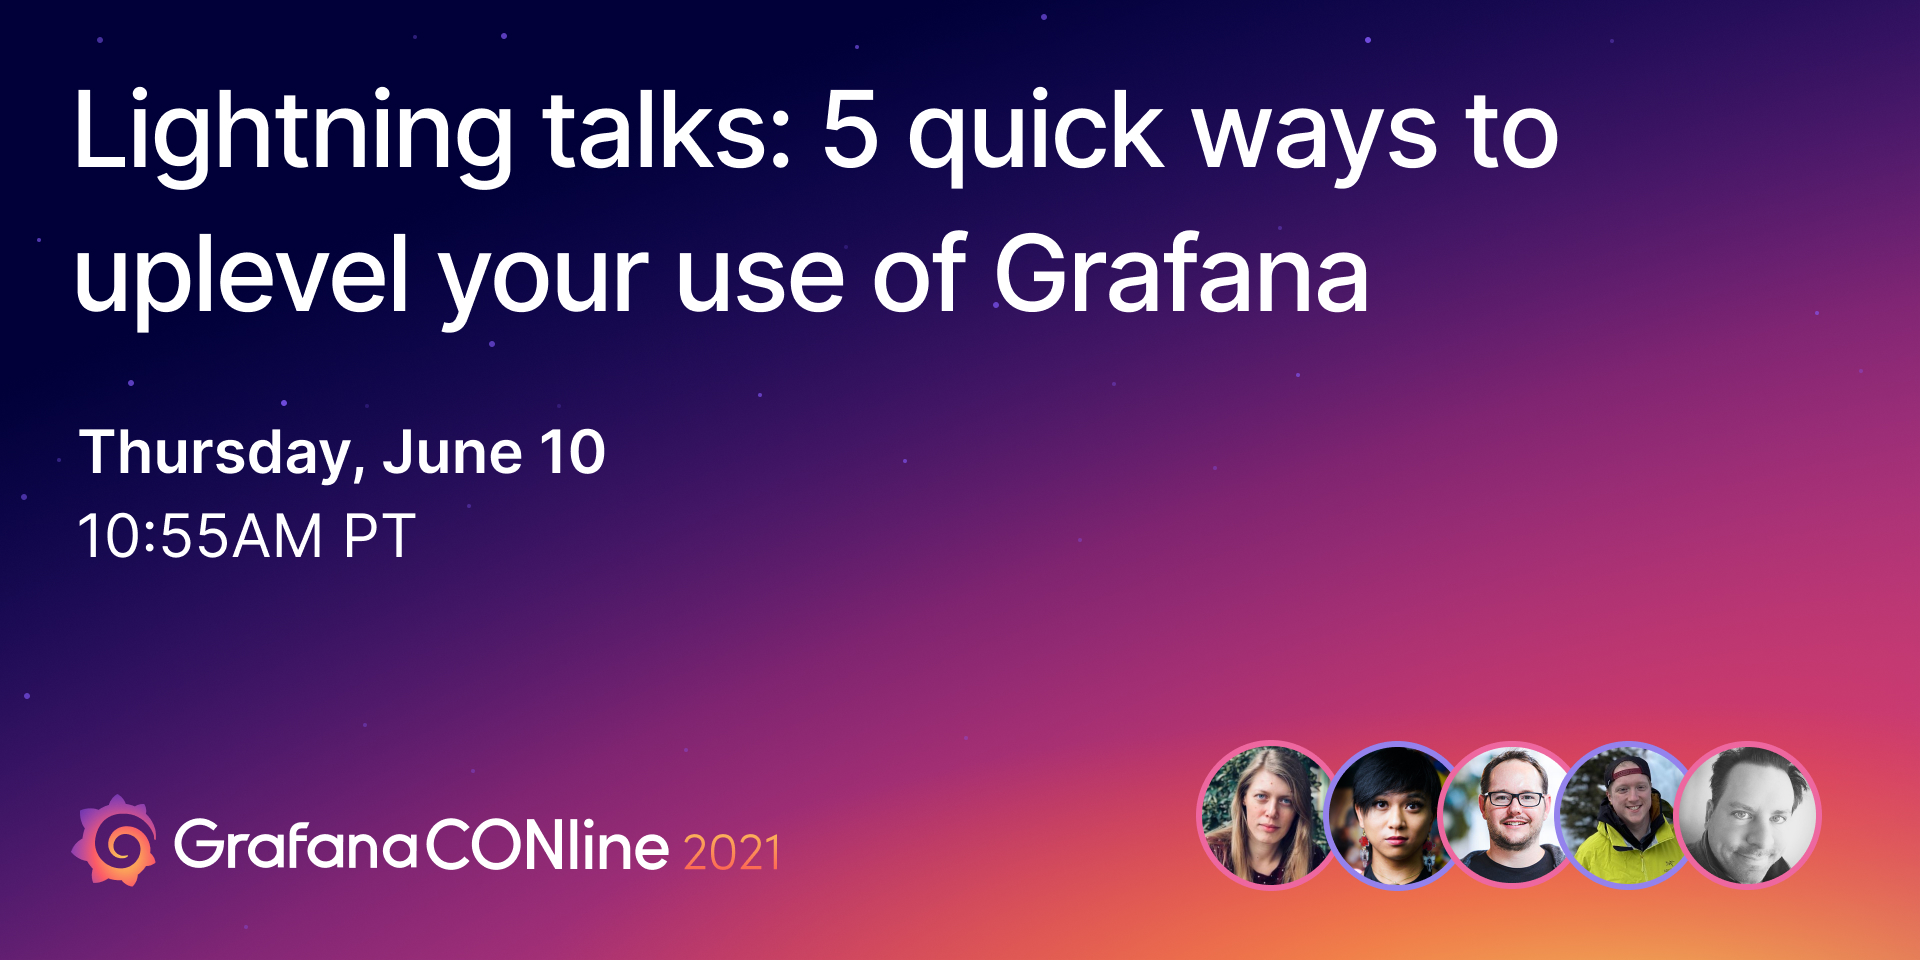 Lightning talks: 5 quick ways to uplevel your use of Grafana